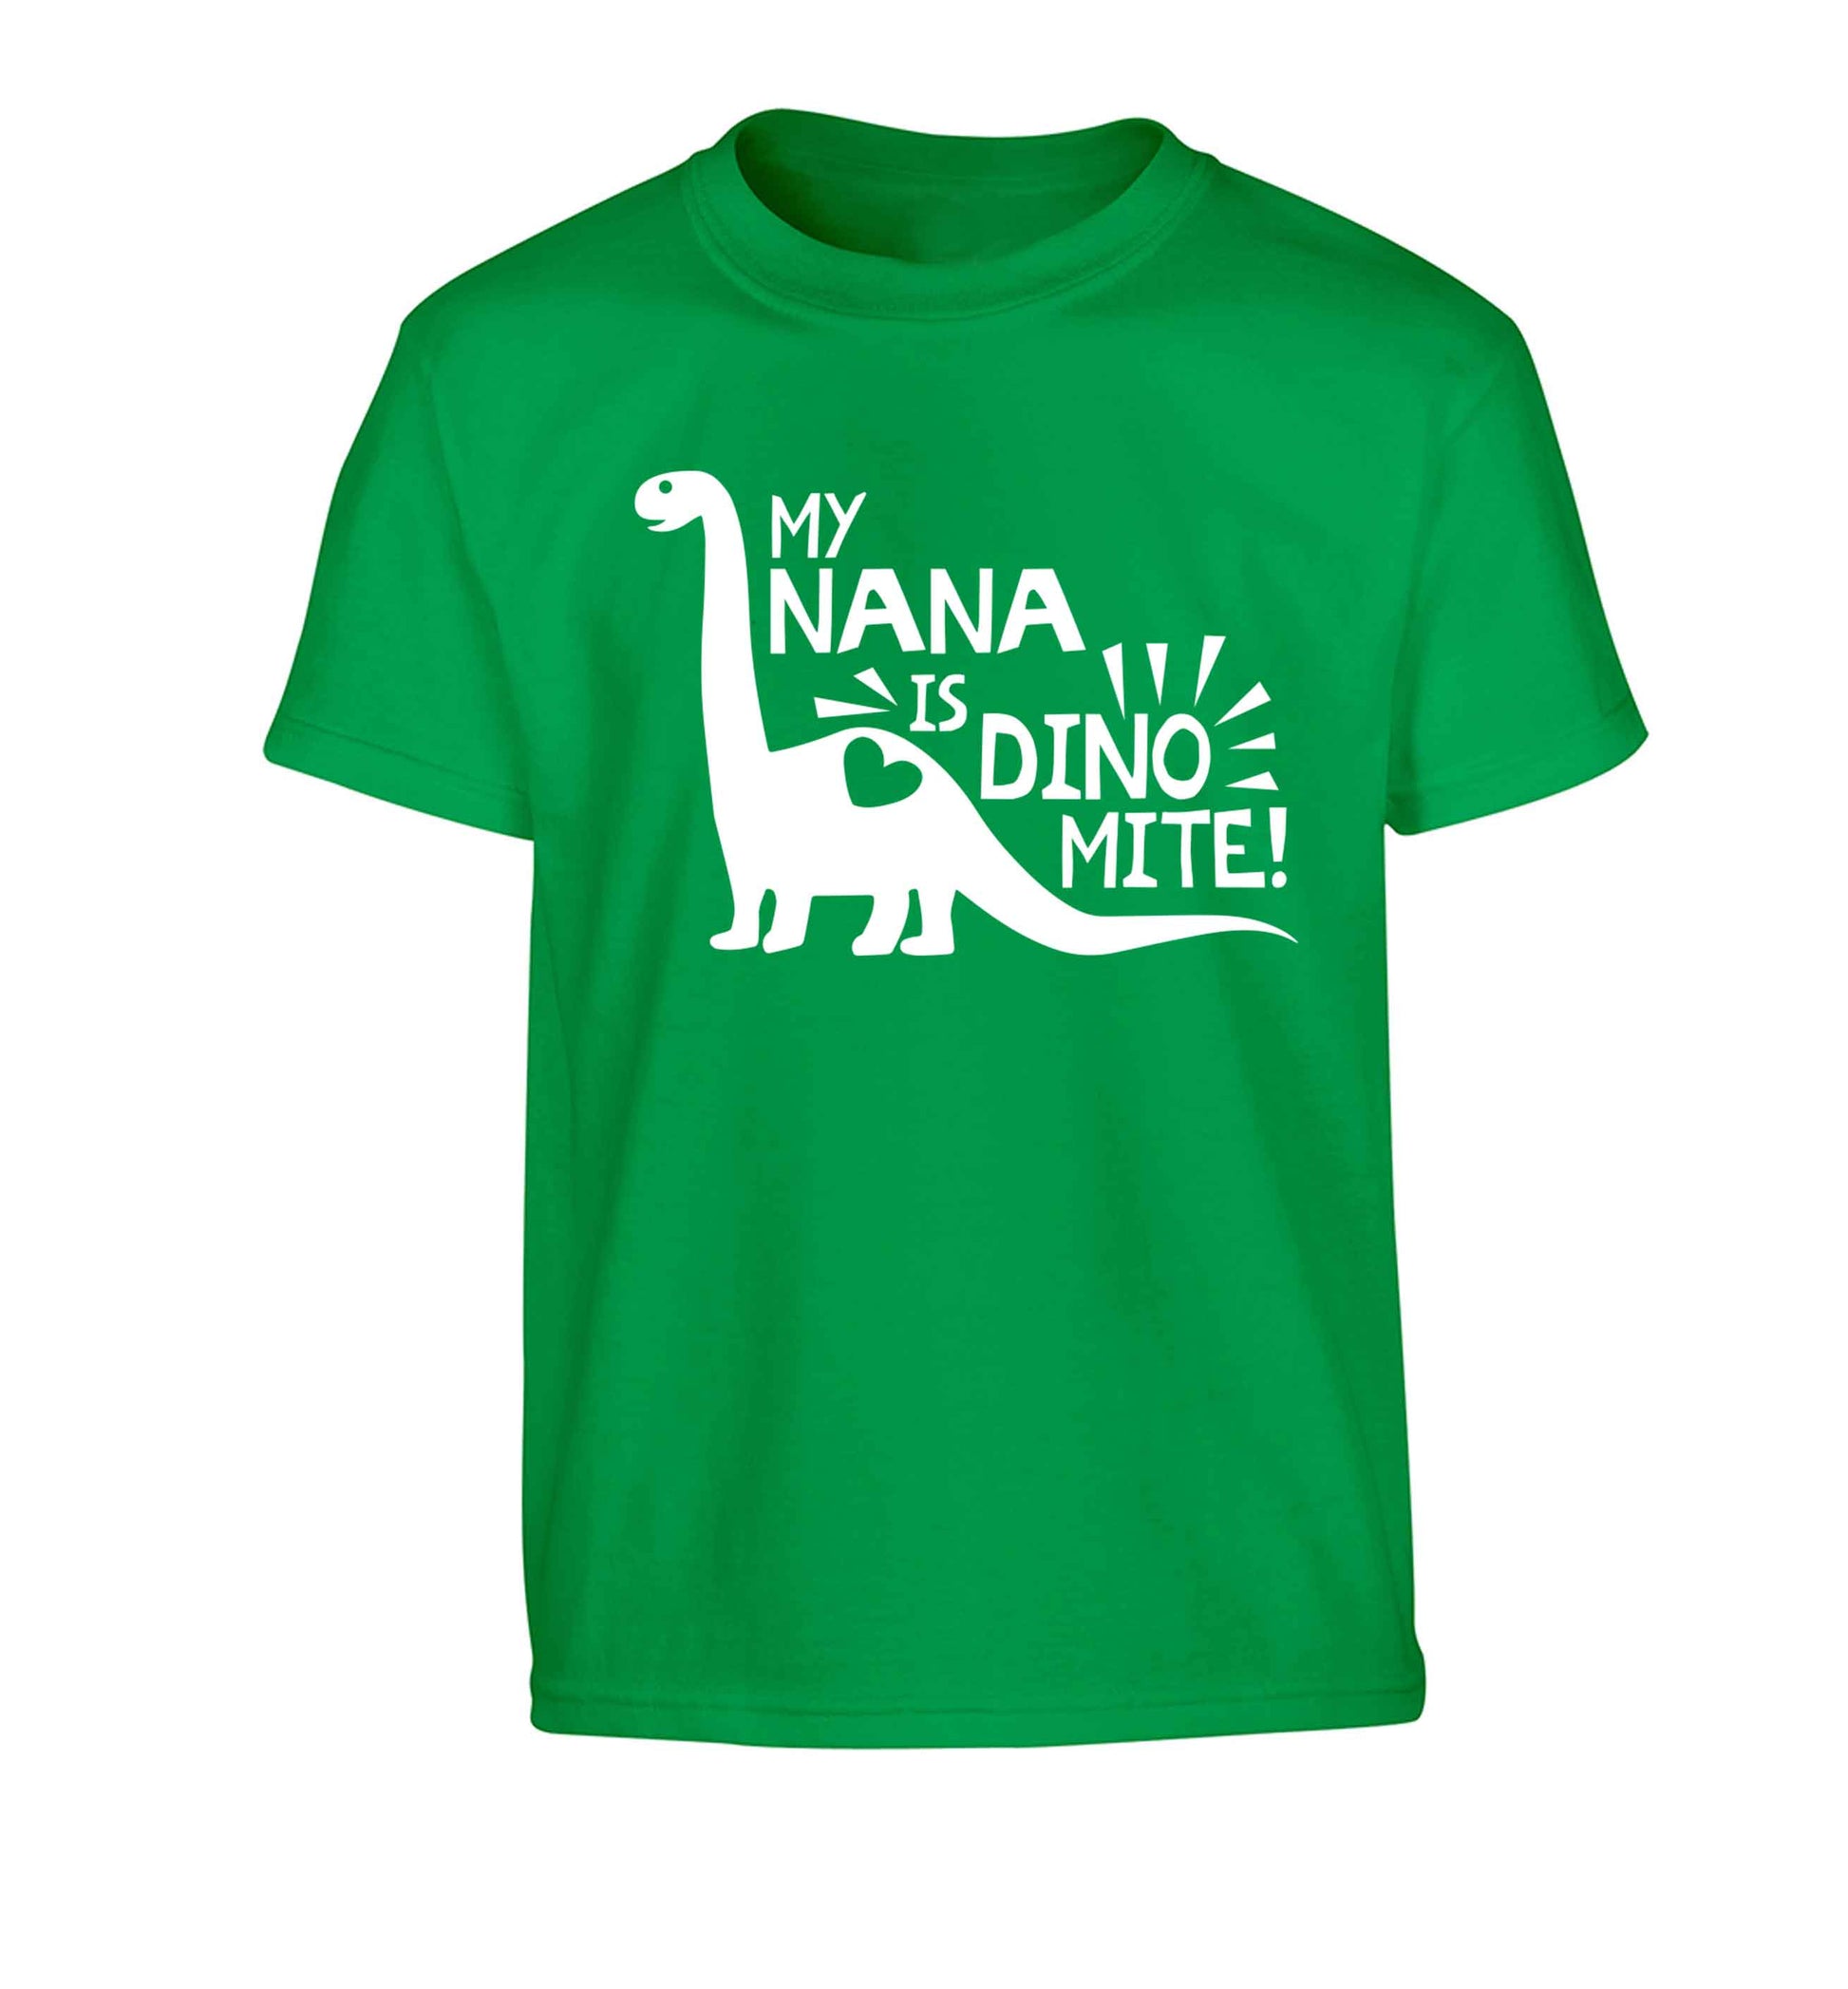 My nana is dinomite! Children's green Tshirt 12-13 Years